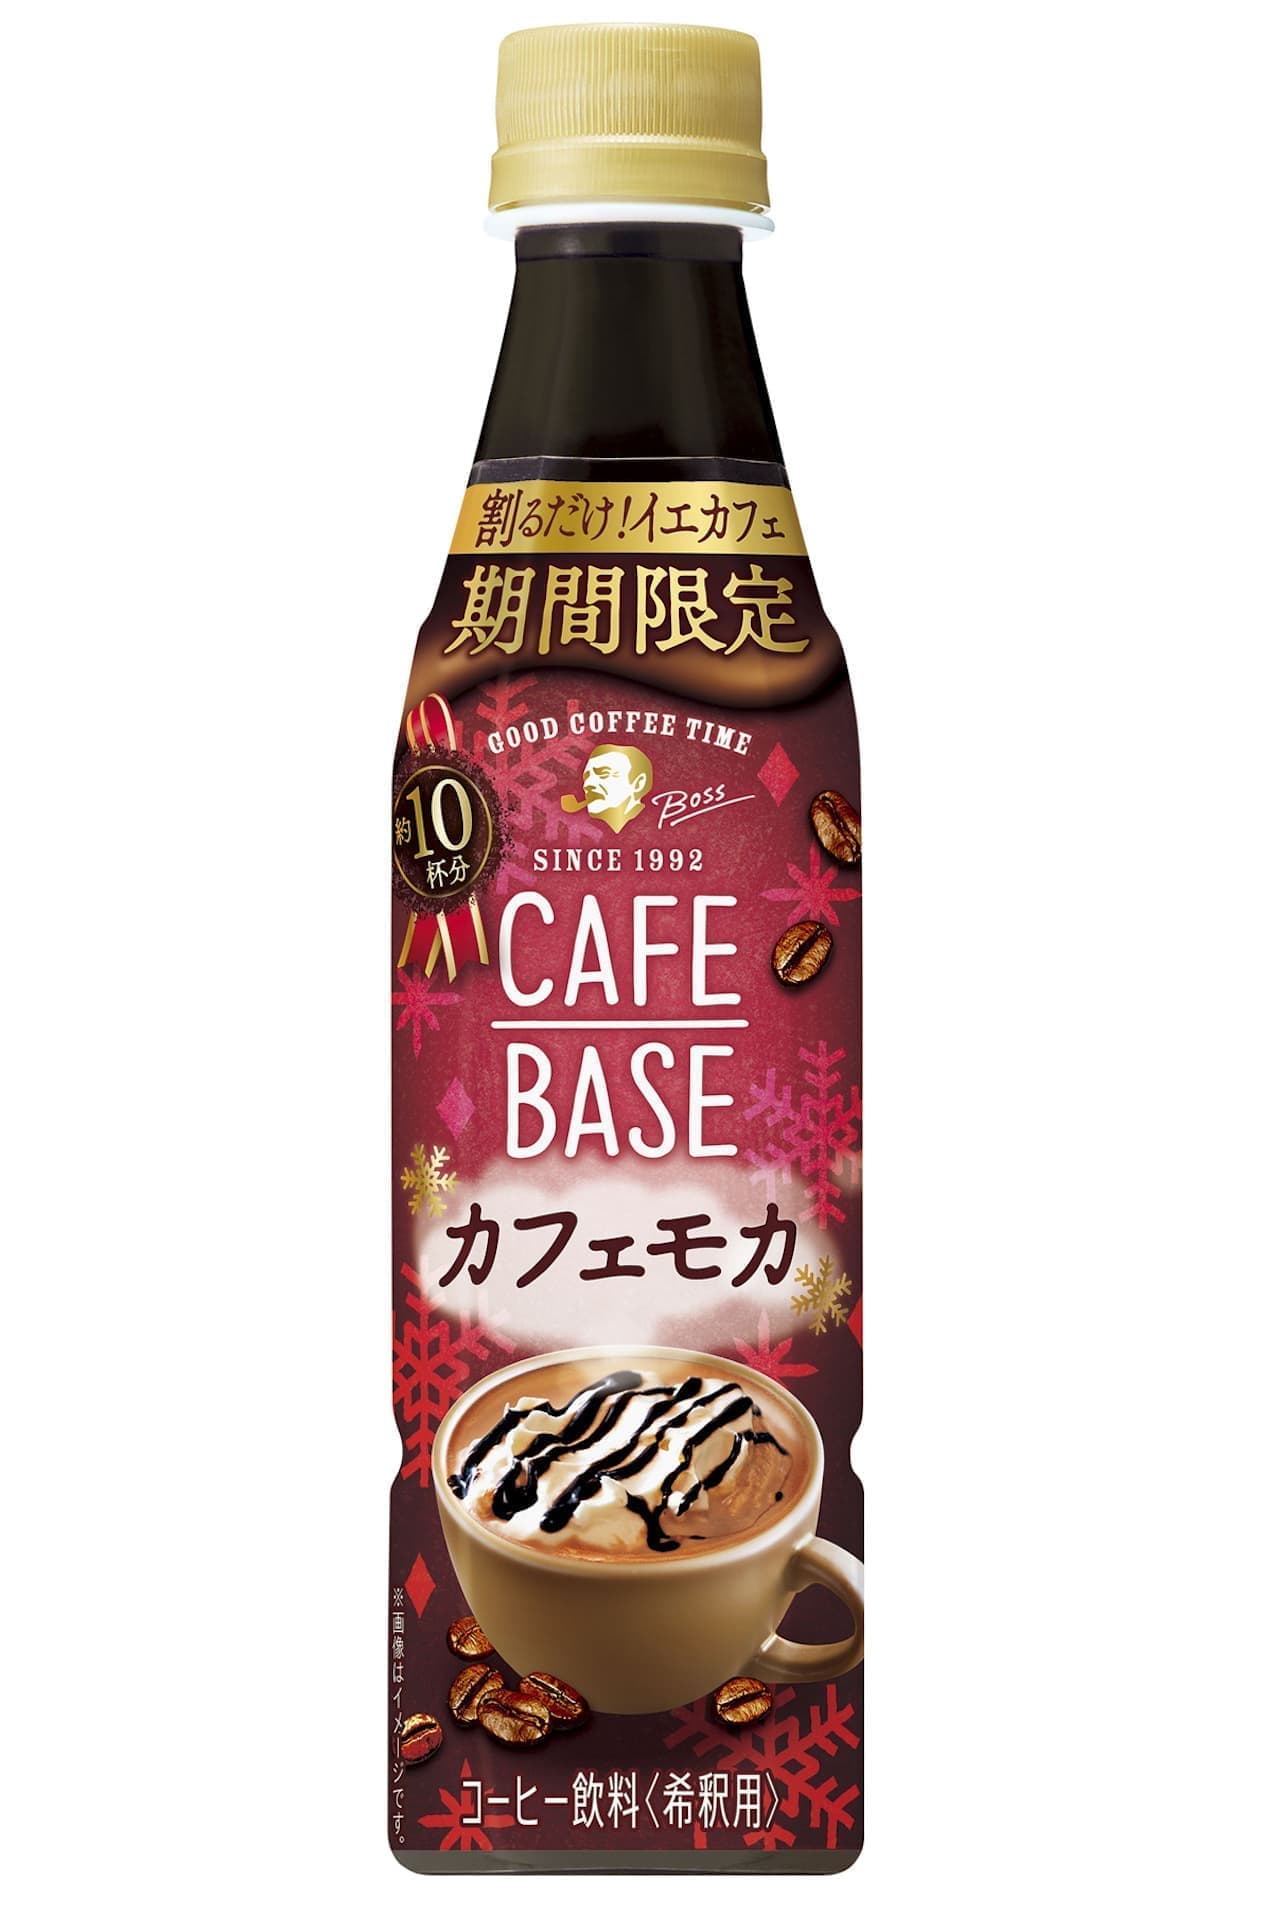 New "Boss Cafe Base Cafe Mocha